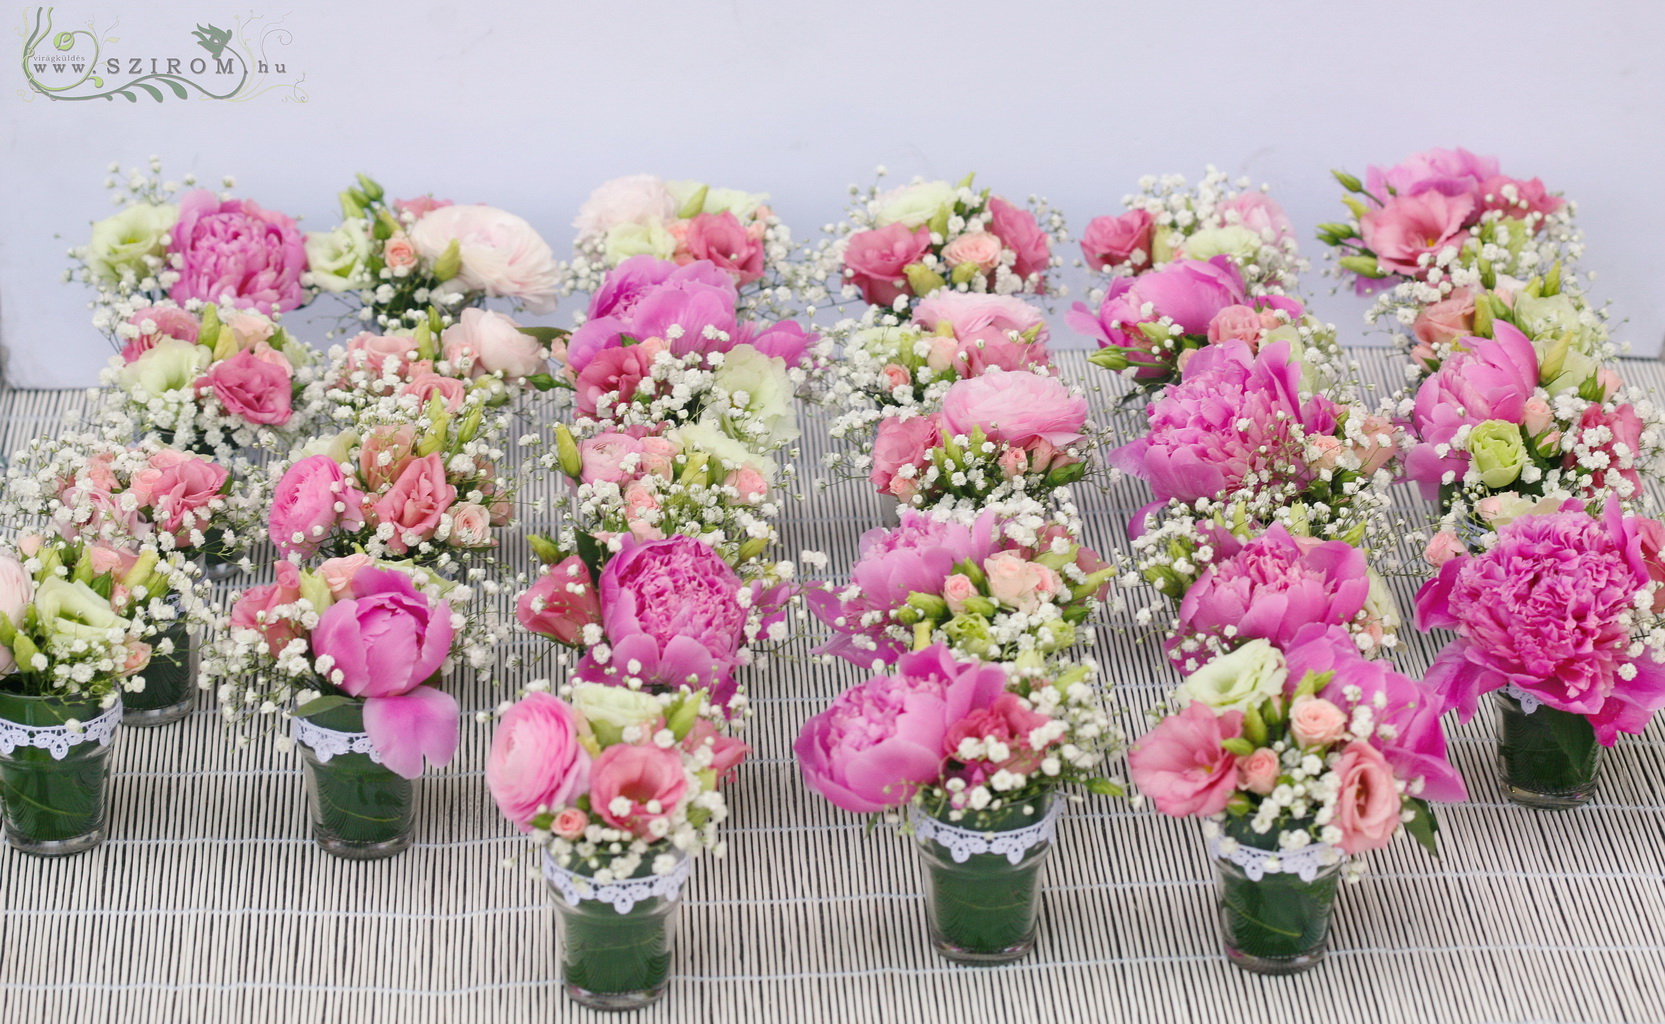 Poharas asztaldísz rózsaszín pünkösdi rózsával,  Hemingway Budapest, esküvő